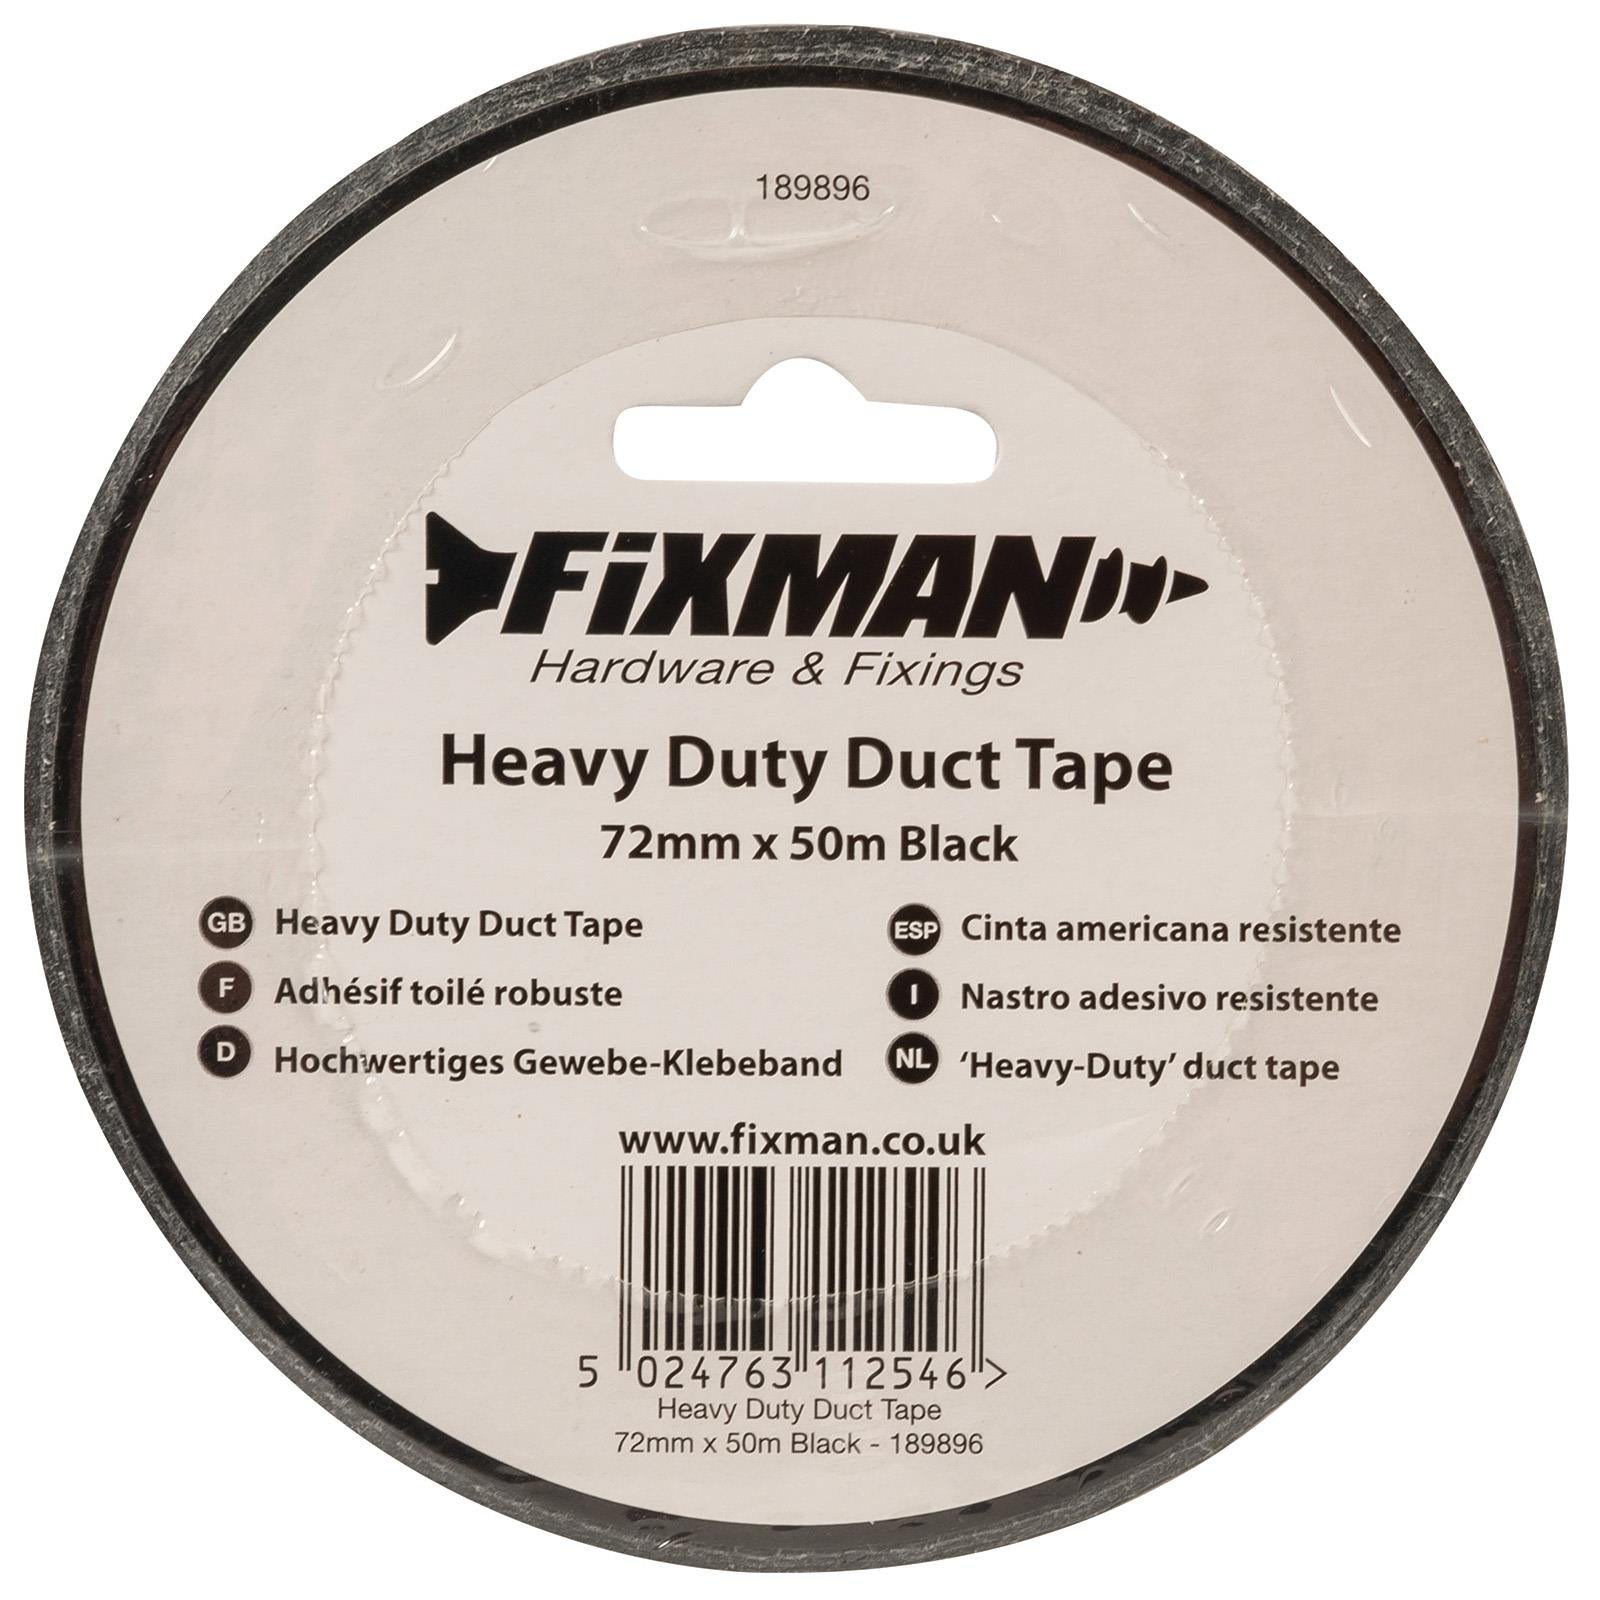 Fixman Duct Tape Heavy Duty Black 72mm x 50m